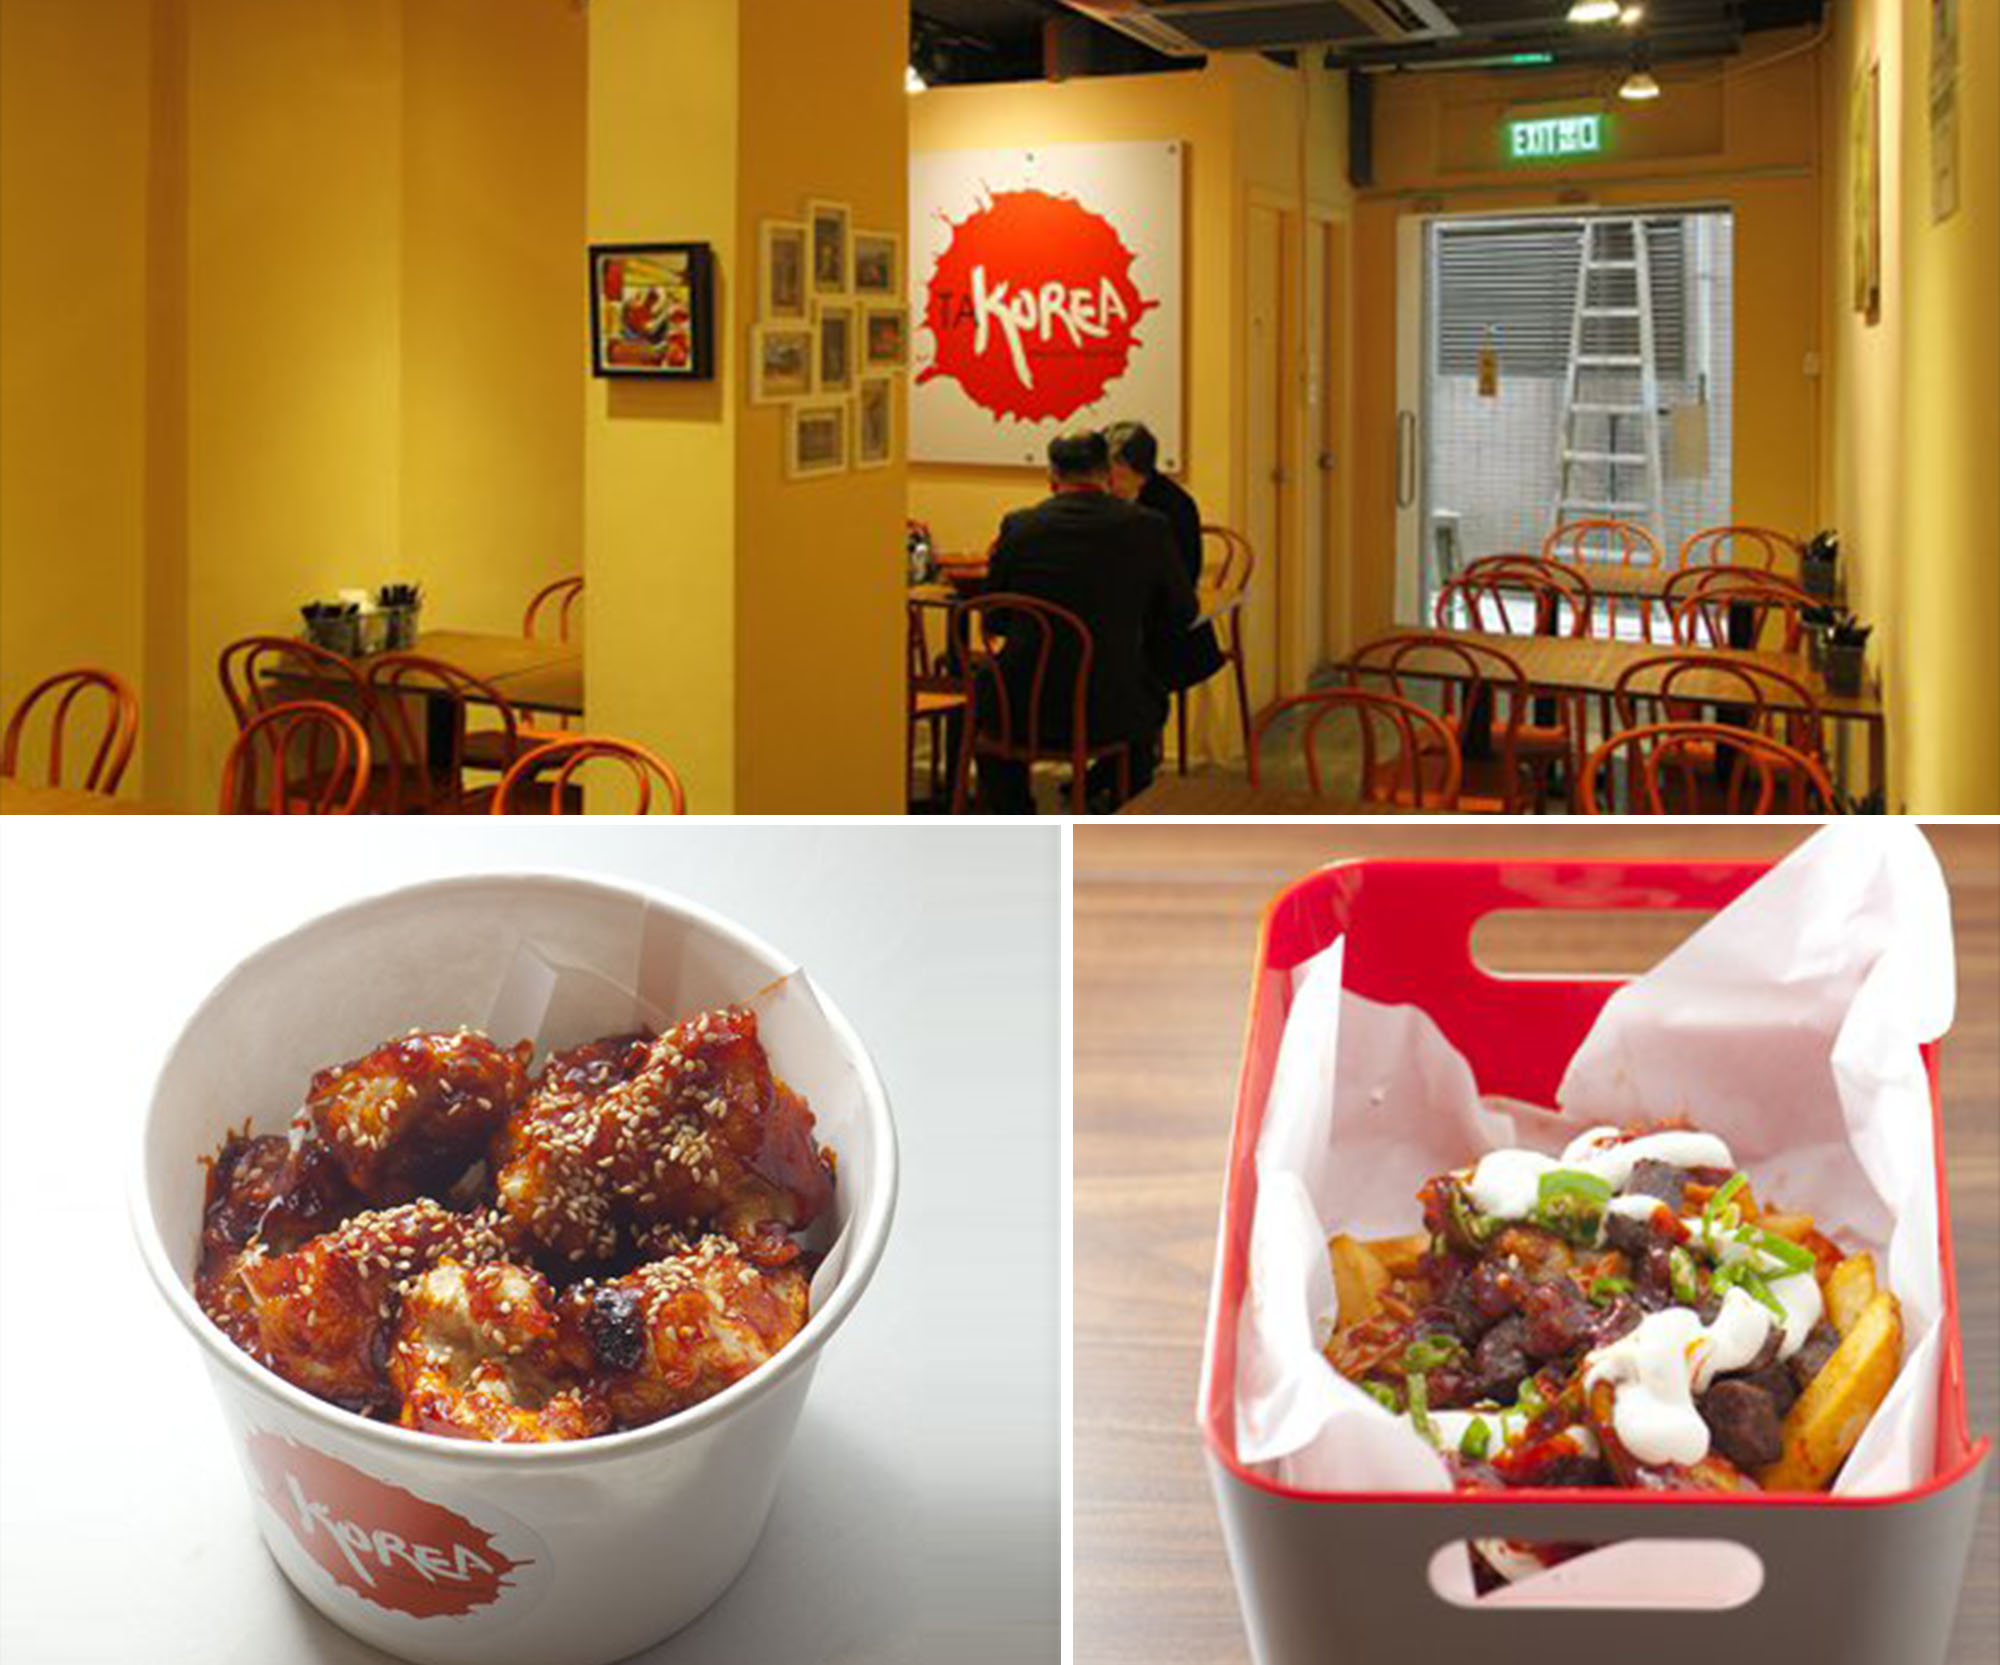 新假期周刊介紹: 混合Tex-Mex色彩的韓式快餐 ”TaKorea”